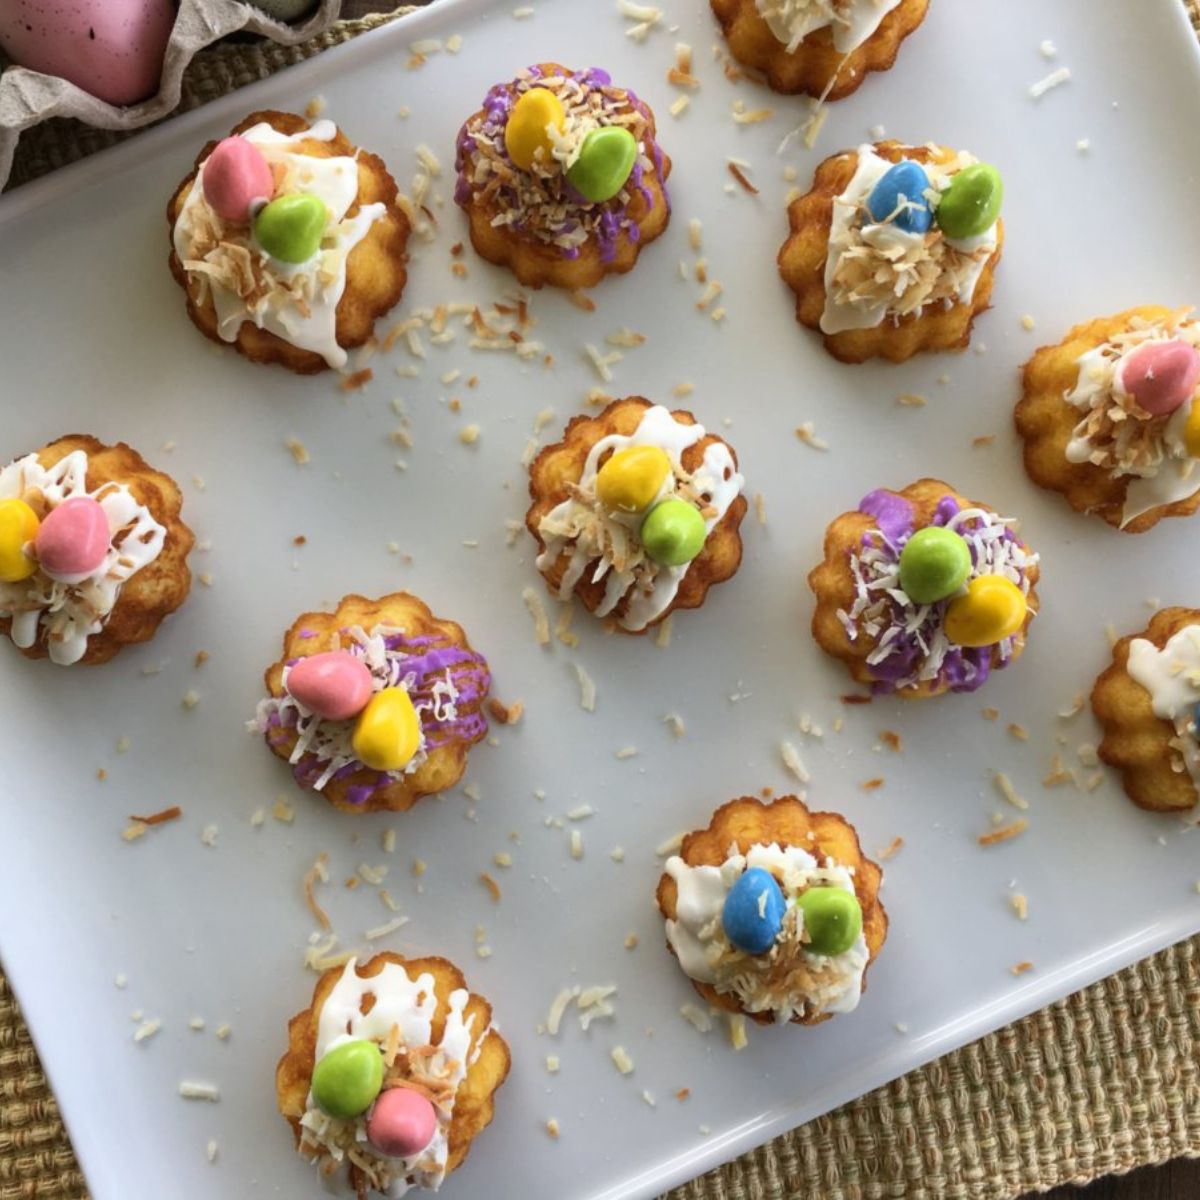 https://walkingonsunshinerecipes.com/wp-content/uploads/2023/03/FEATURED-NEW-SIZE-Mini-Bundt-Cakes.-.jpg